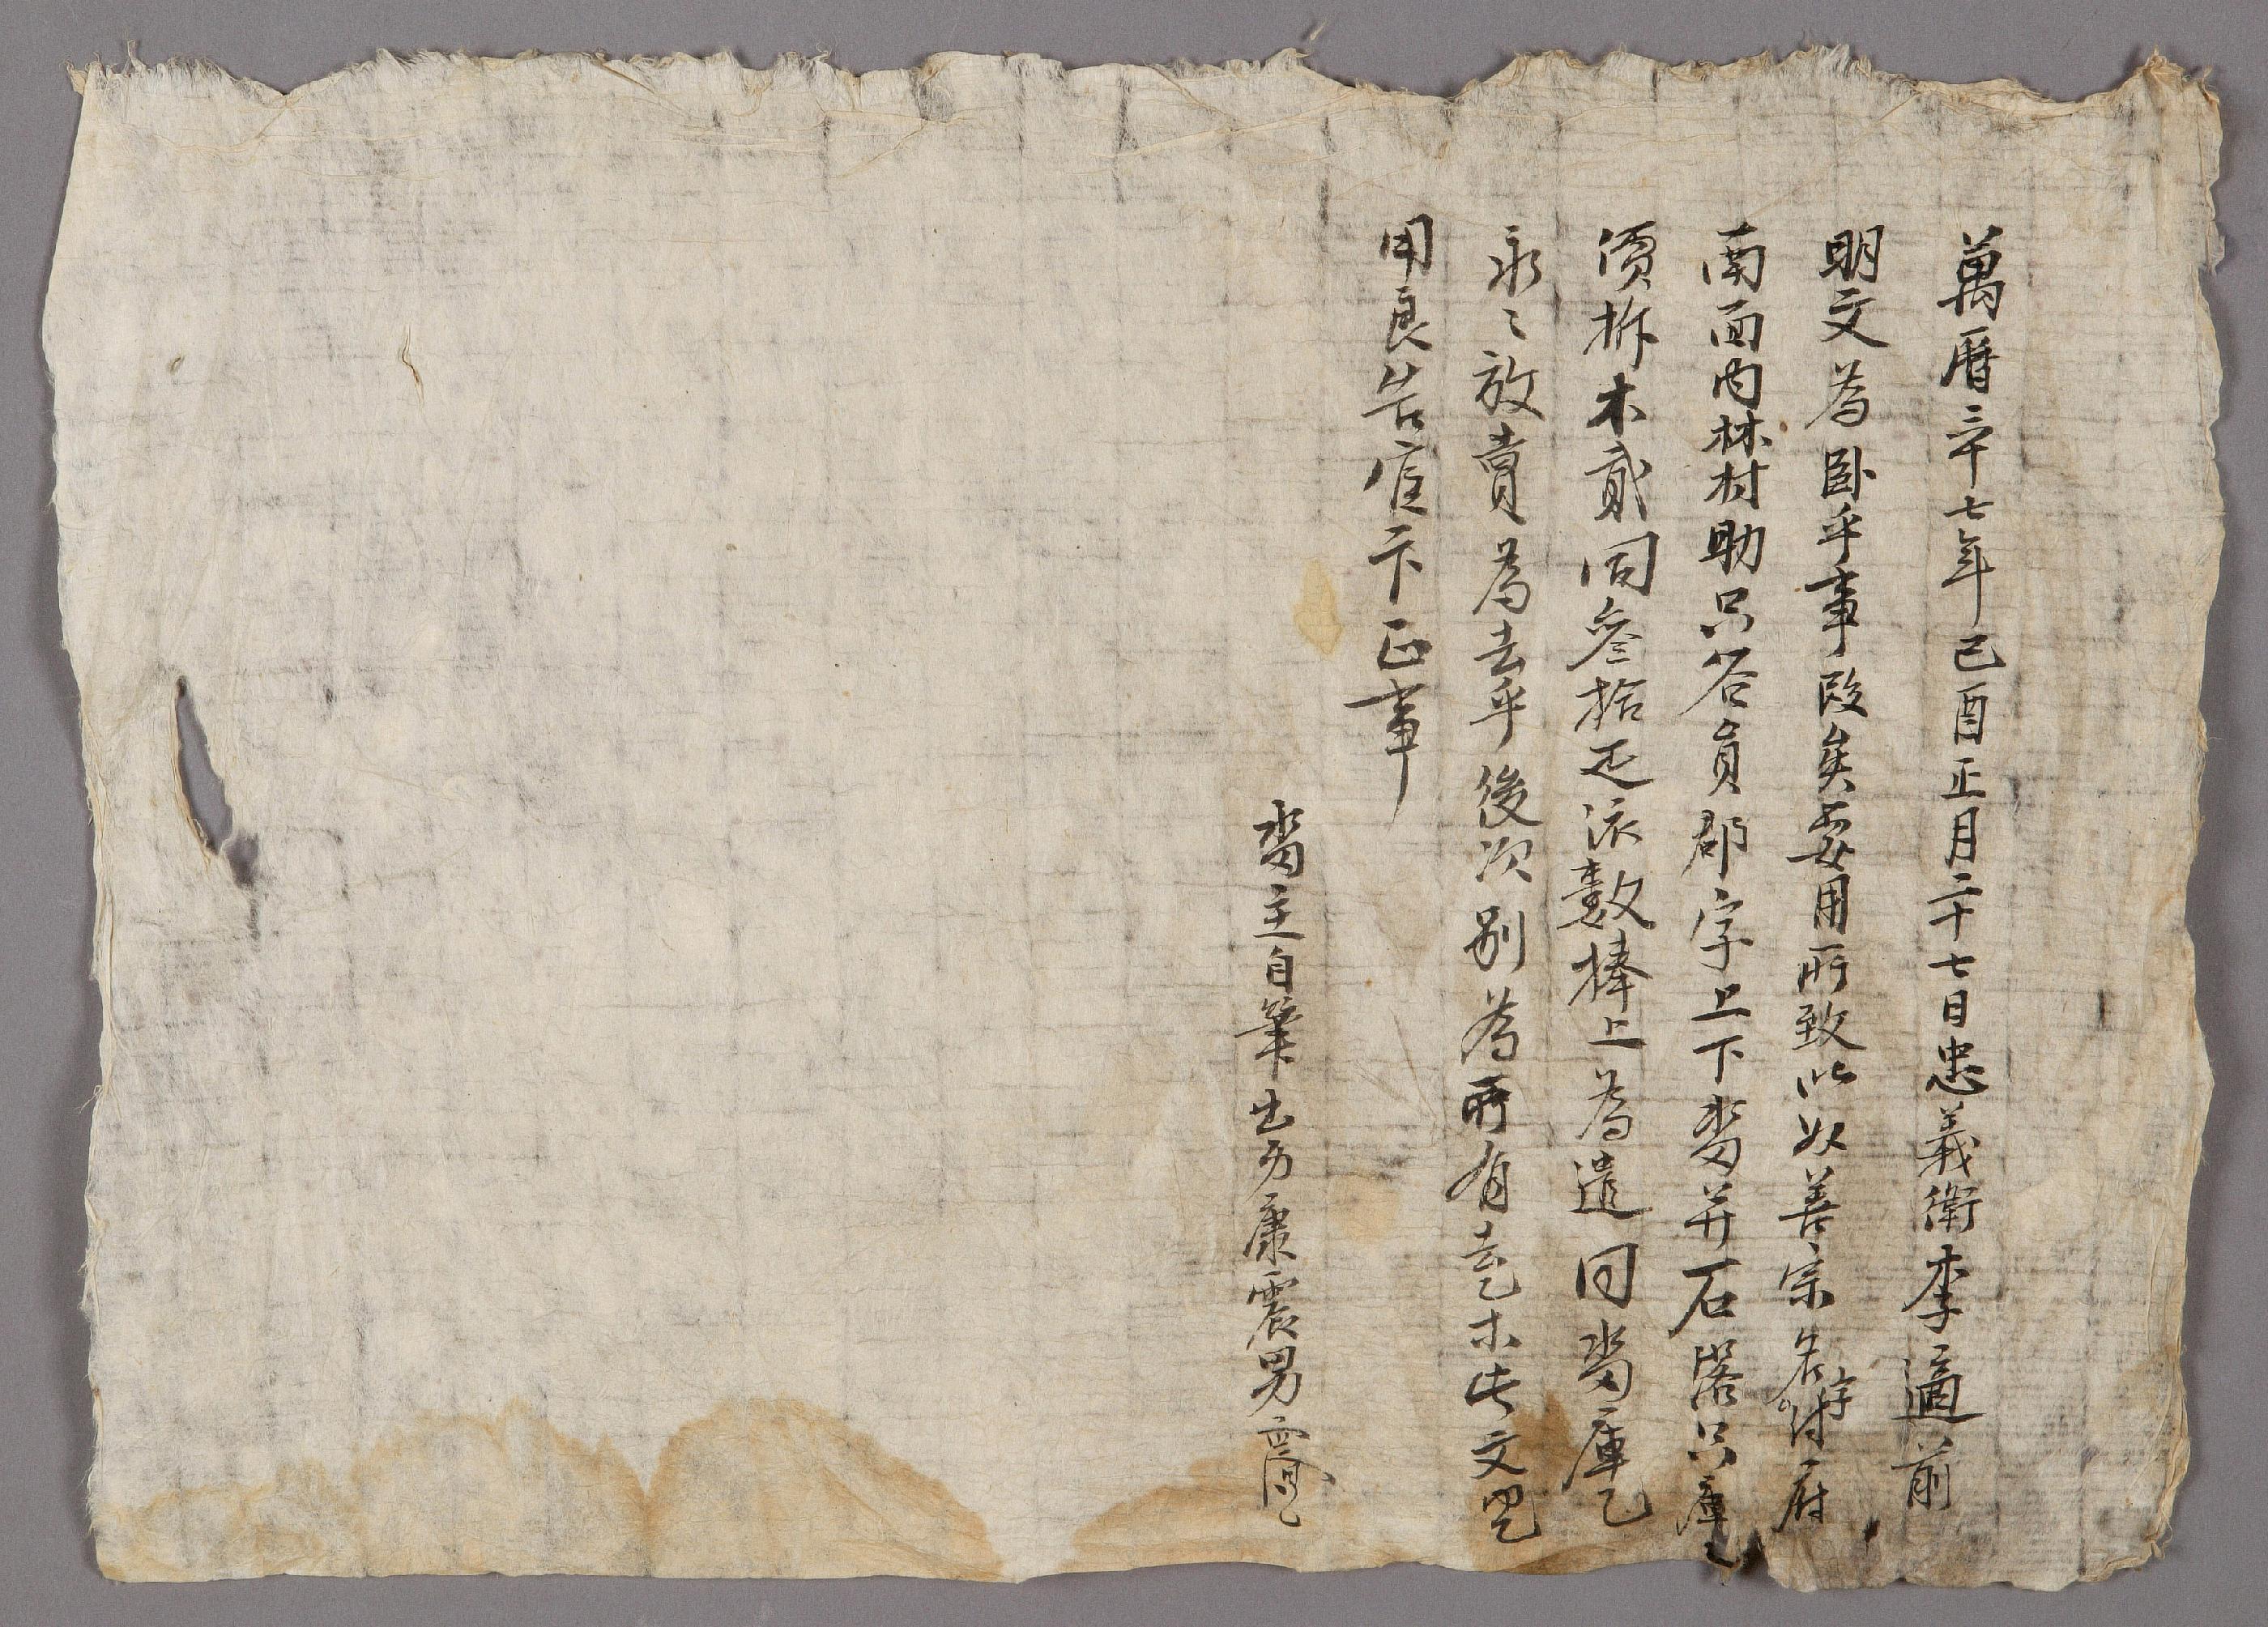 강진남(康震男)이 1609년에 작성한 전답 방매문기